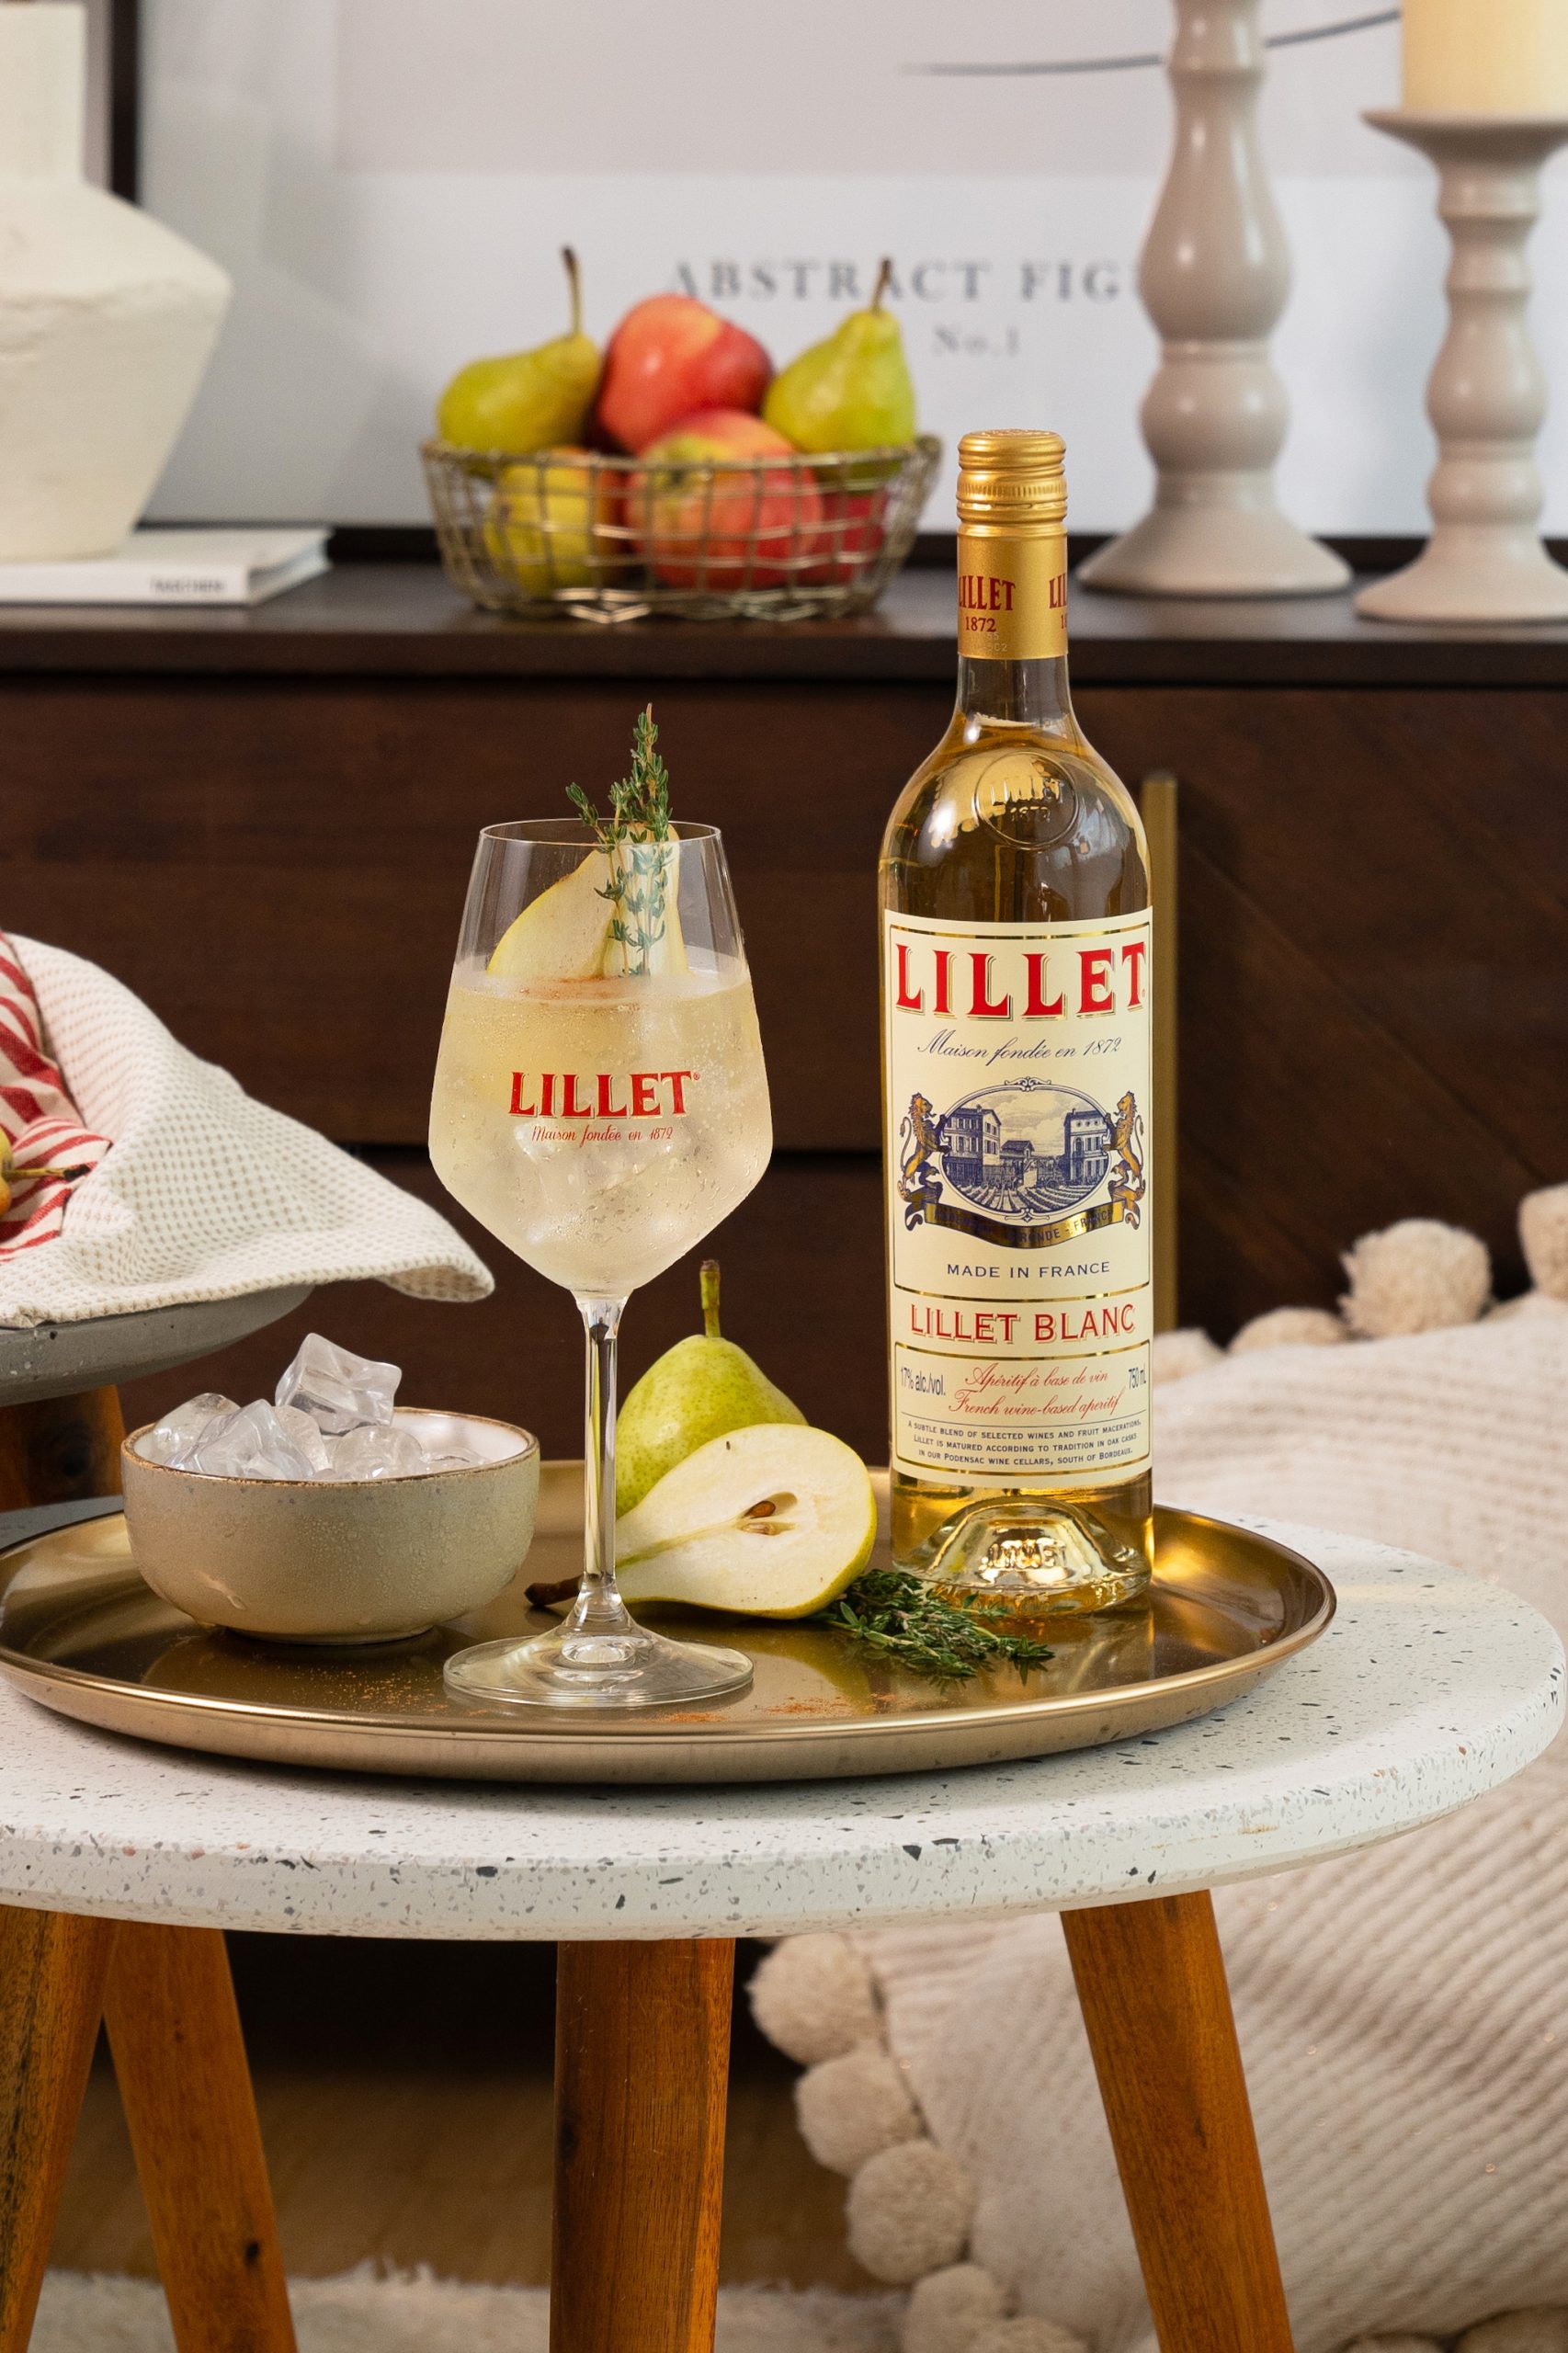 Lillet Winter Fizz: Lillet Blanc met spuitwater, peer en rozemarijn